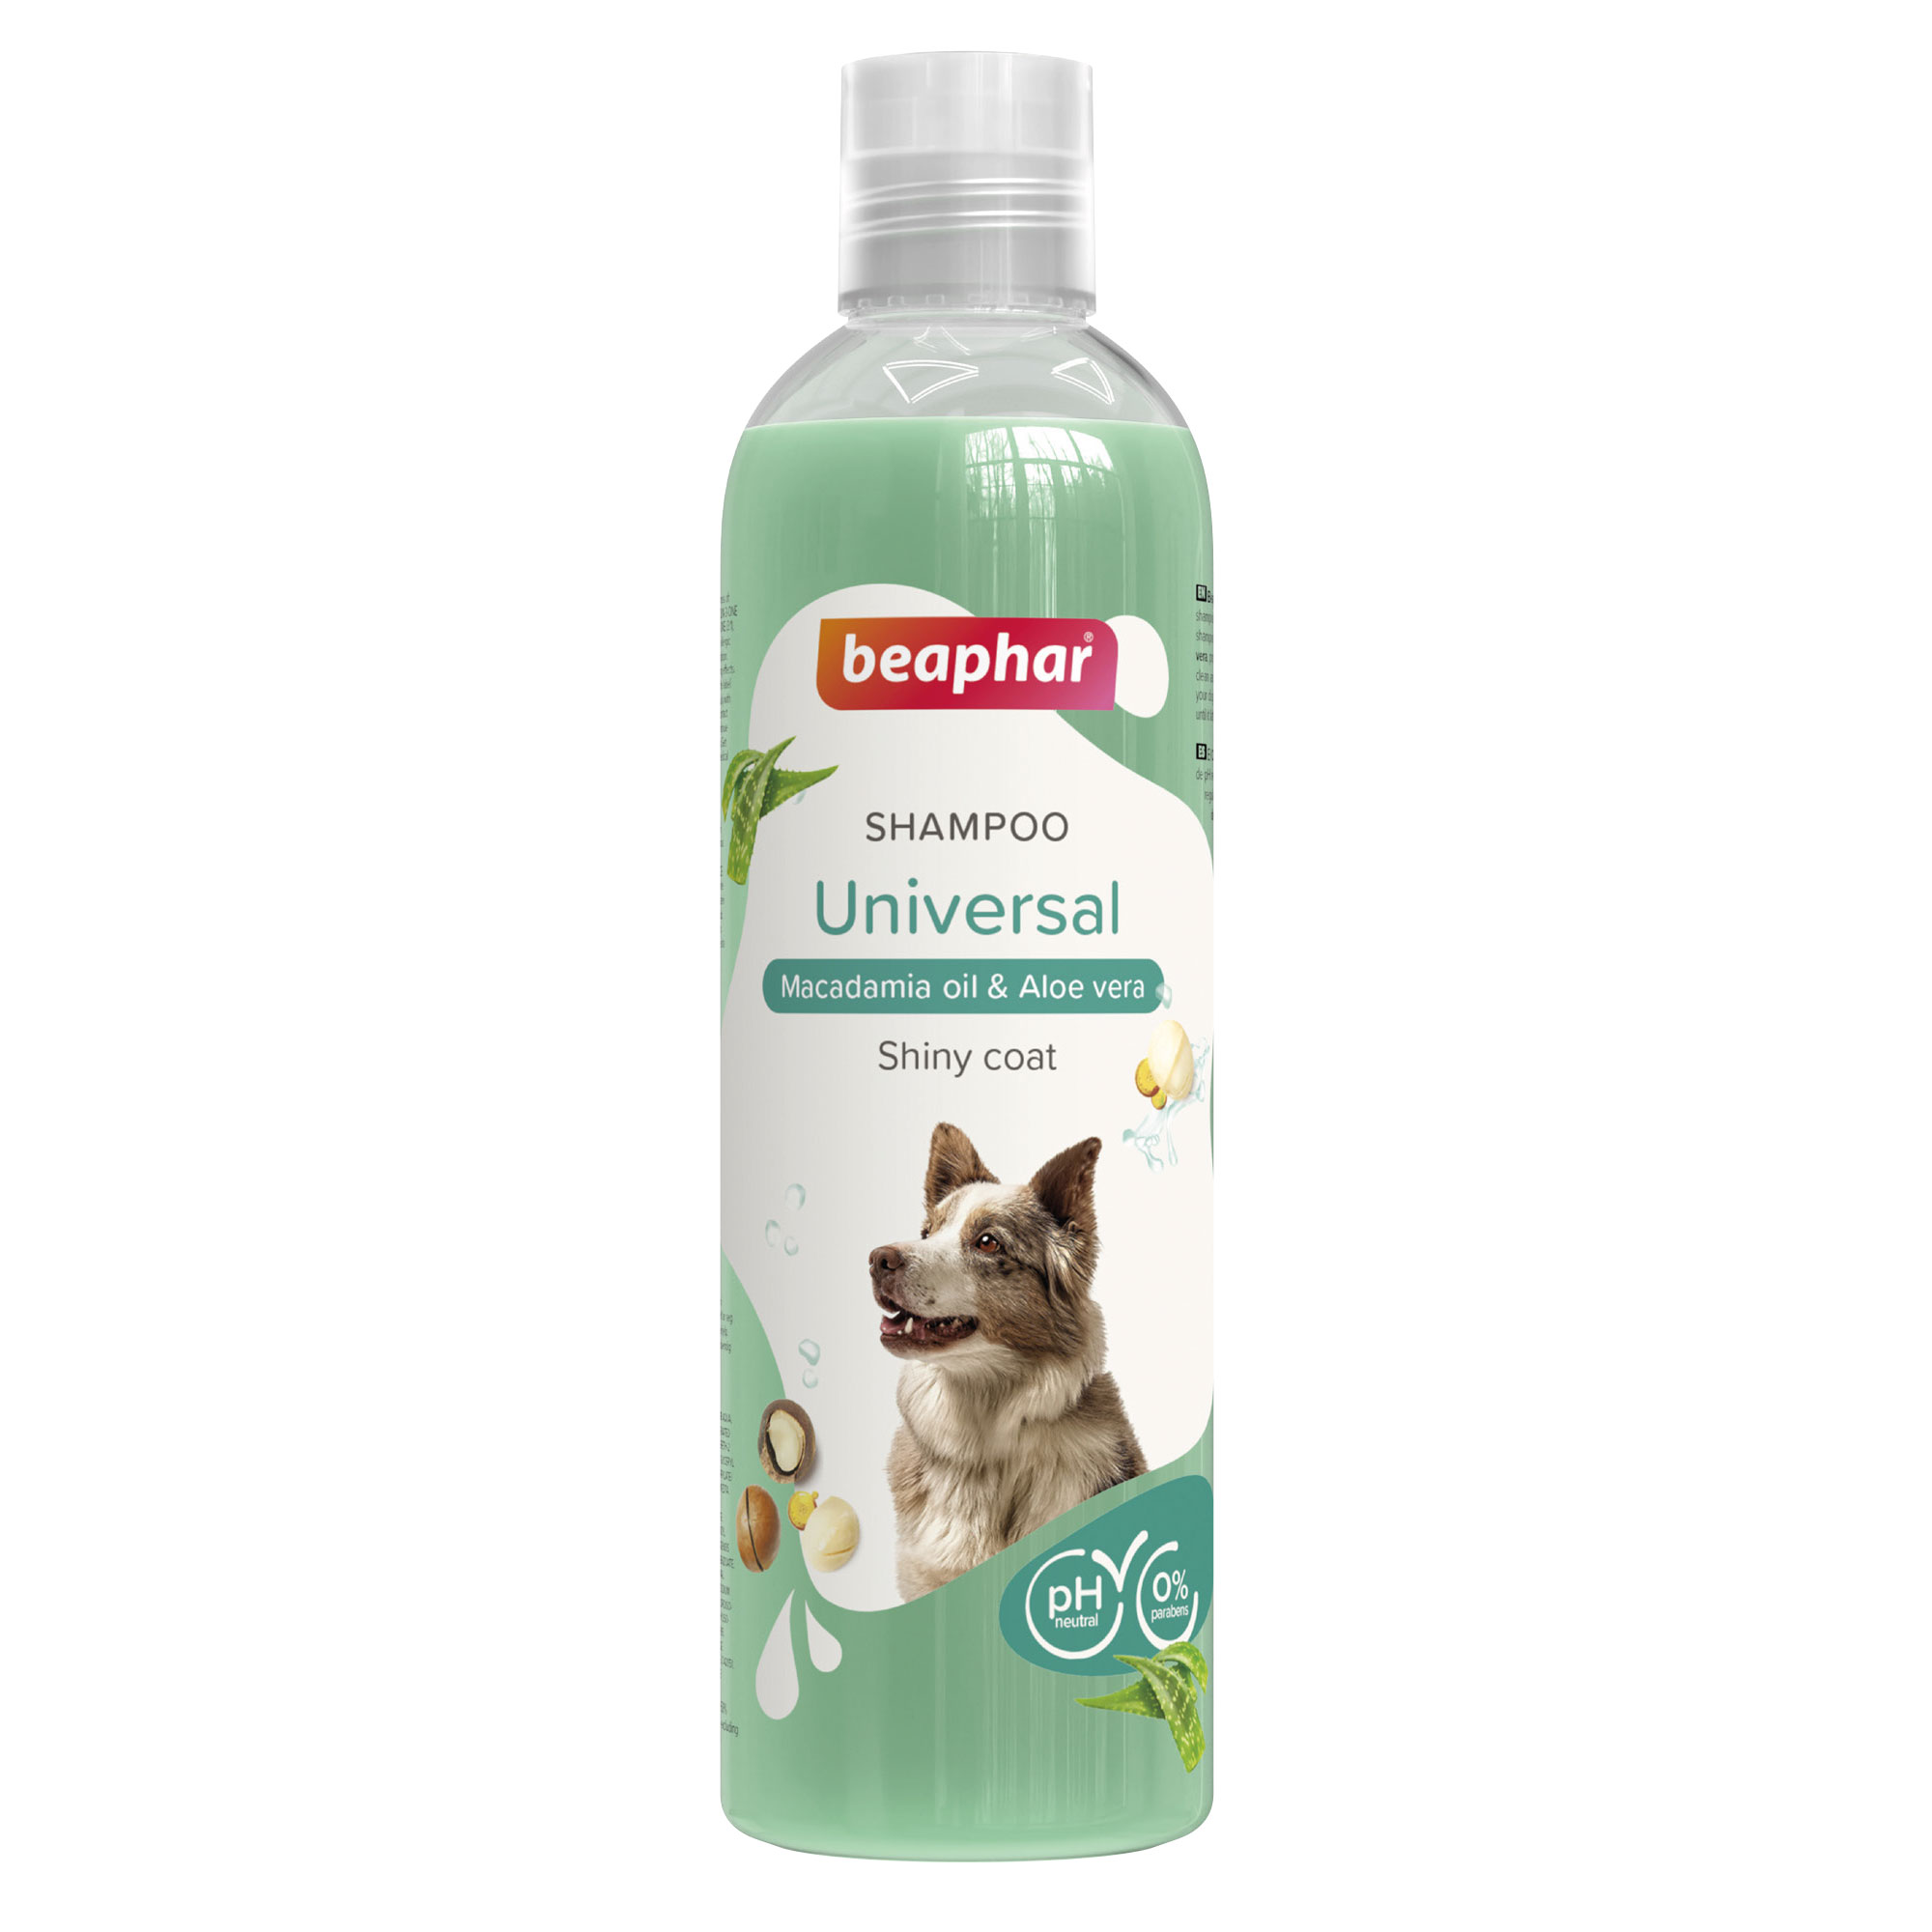 Beaphar Shampoo Universal Dog 